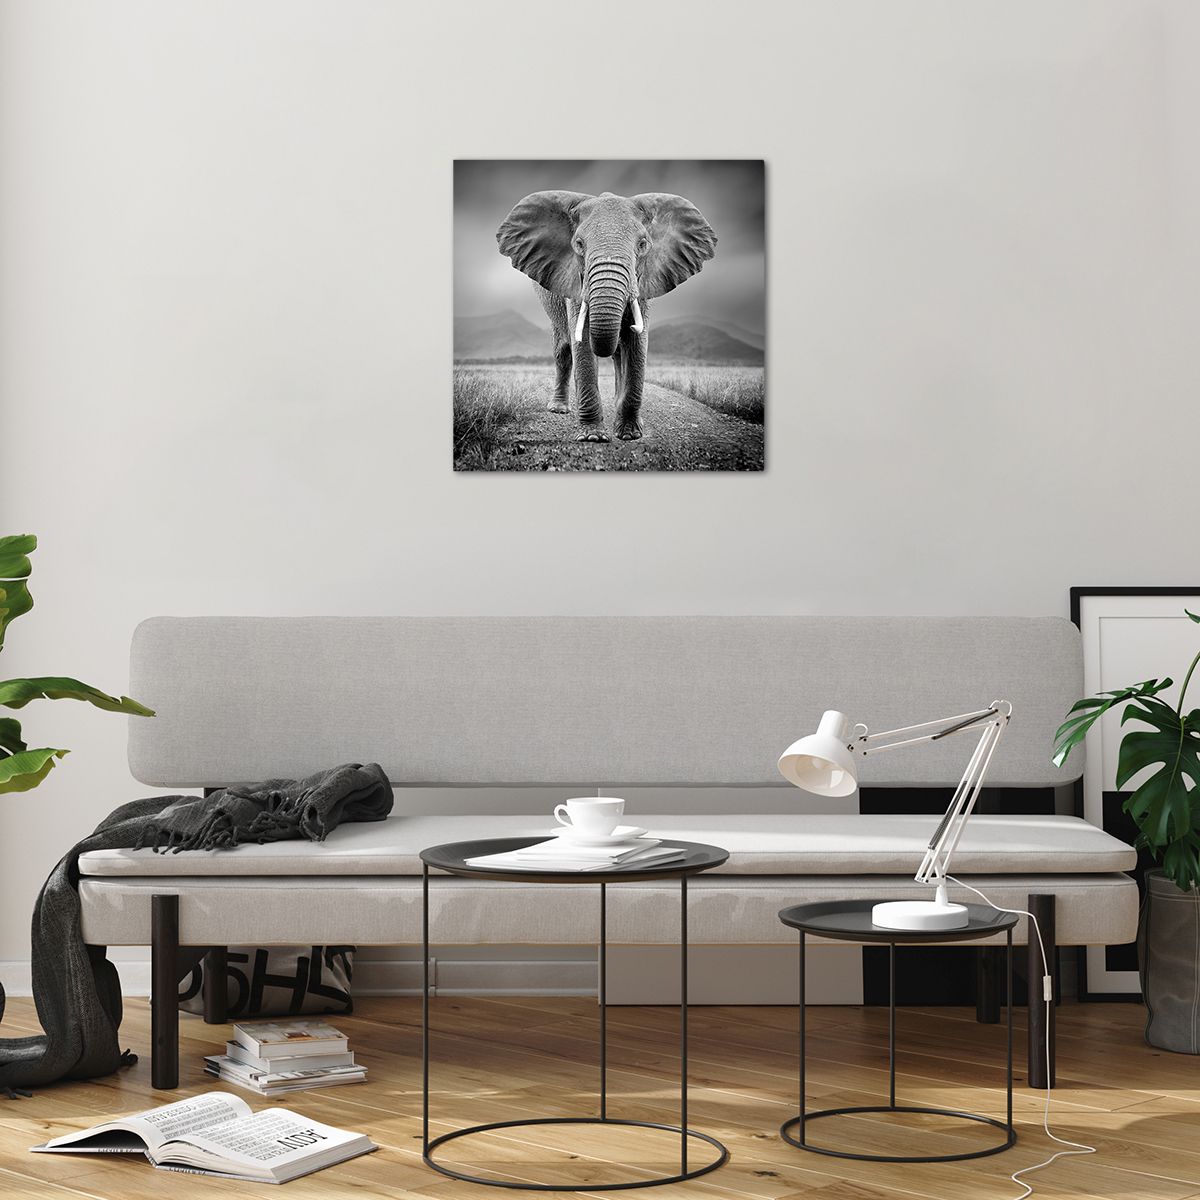 Üveg kép Elefánt, Üveg kép Állatok, Üveg kép Tájkép, Üveg kép Természet, Üveg kép Afrika